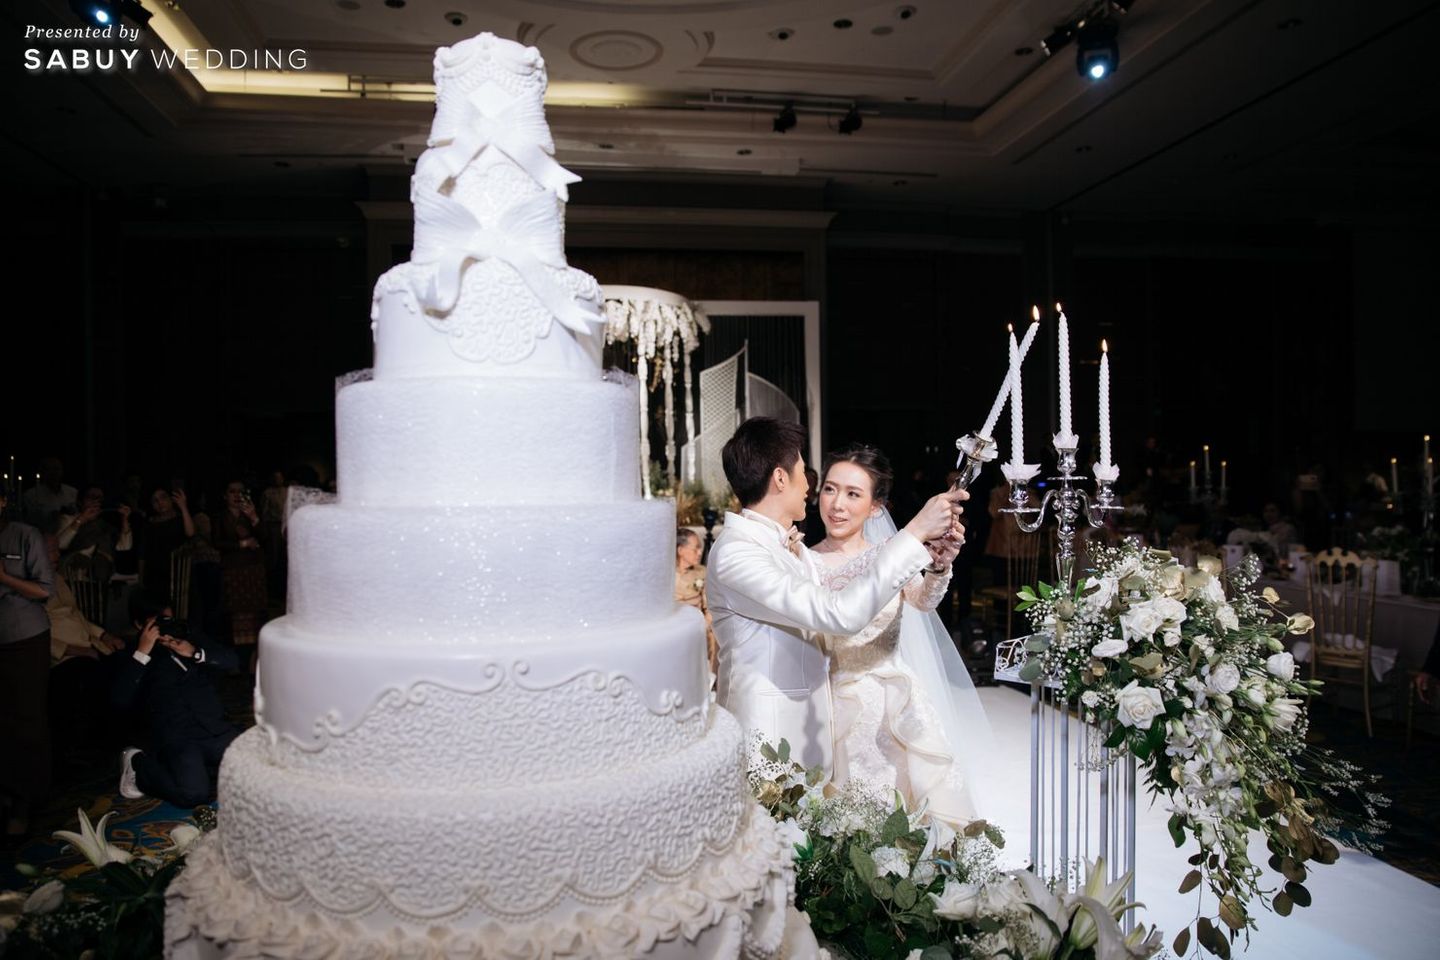 พิธีแต่งงาน,แต่งงาน,เจ้าบ่าว,เจ้าสาว,เค้กแต่งงาน รีวิวงานแต่งไทยประยุกต์ สวยคลาสสิกด้วยโทนขาวทอง @ The Berkeley Hotel Pratunam